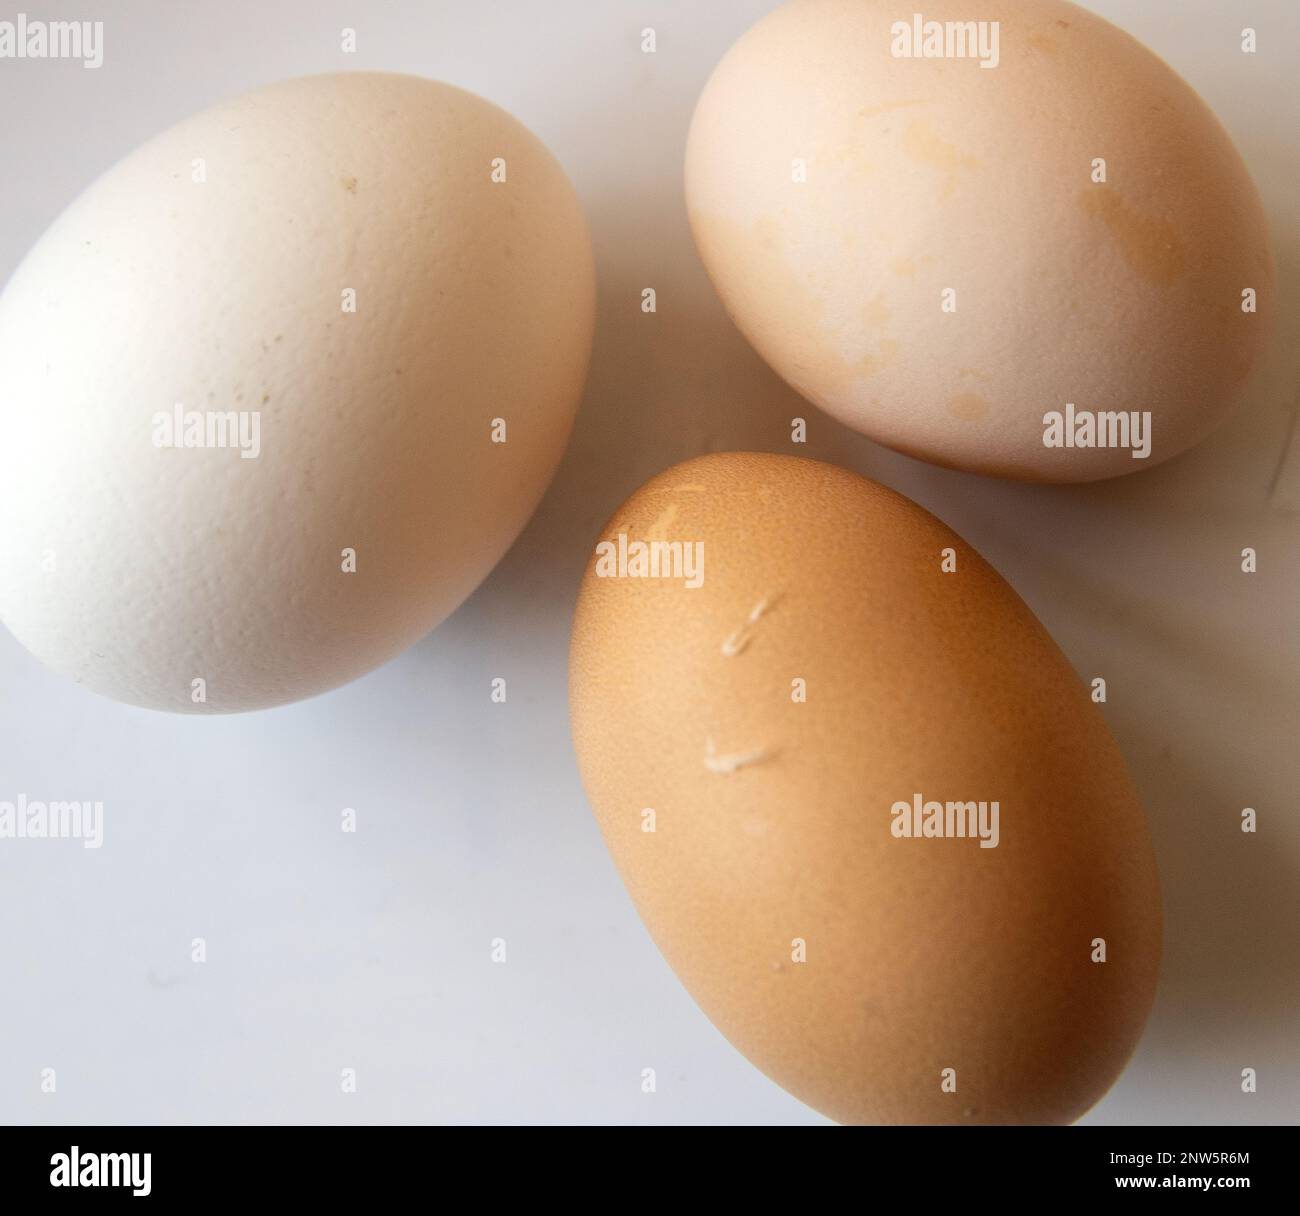 Los huevos de gallina sobre fondo blanco. Foto de stock